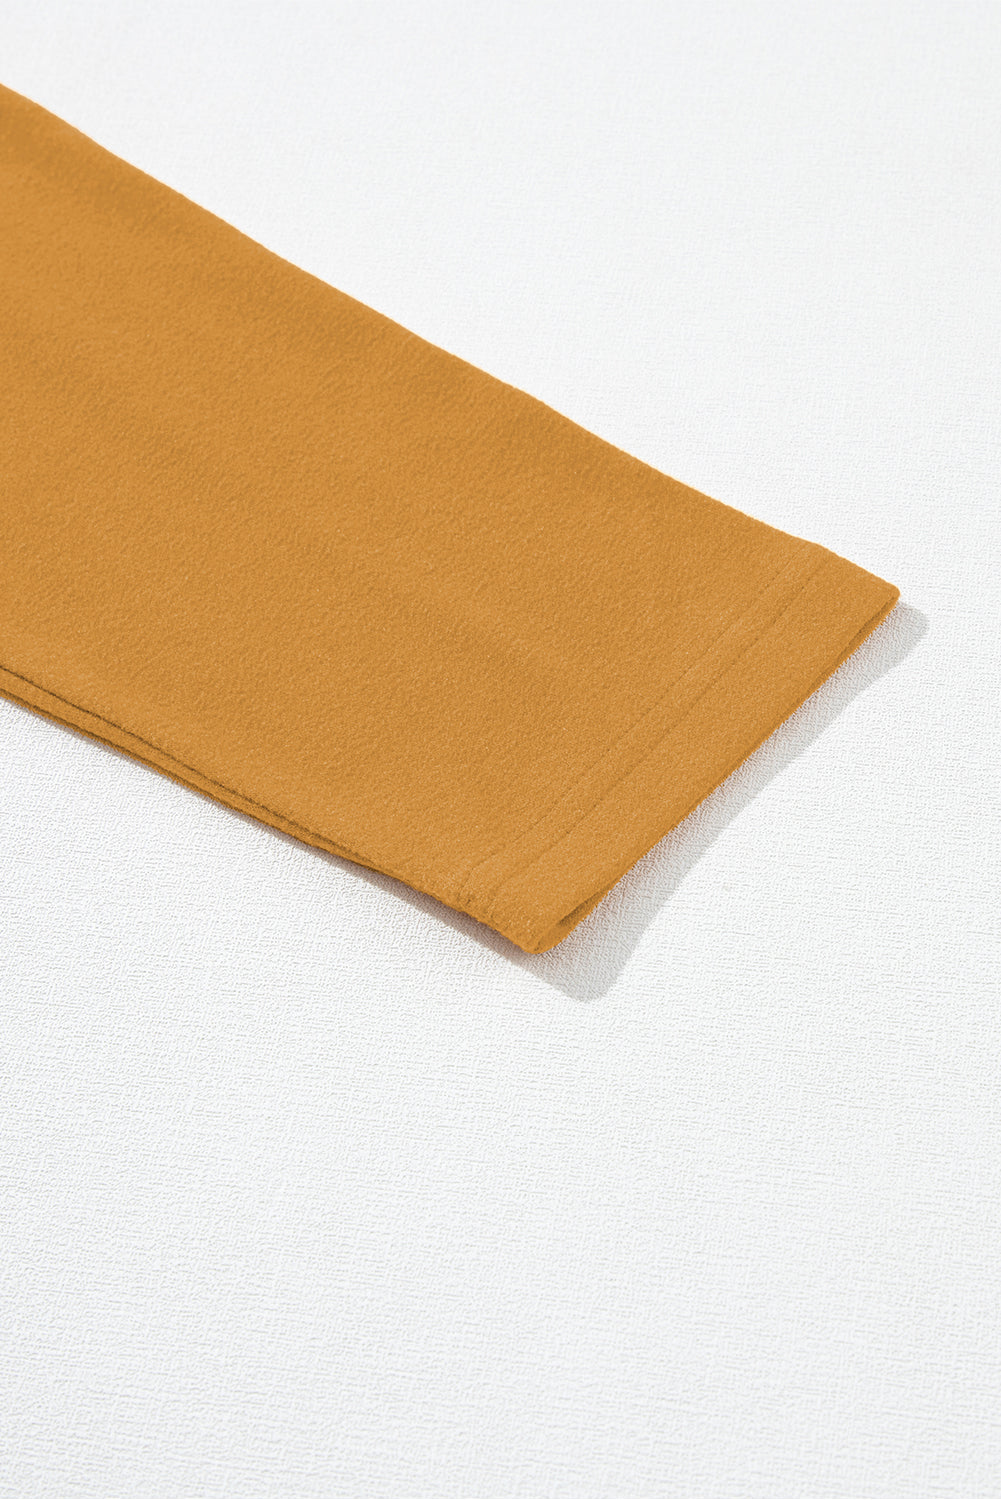 Haut à manches longues en tricot color block beige français clair à coutures apparentes